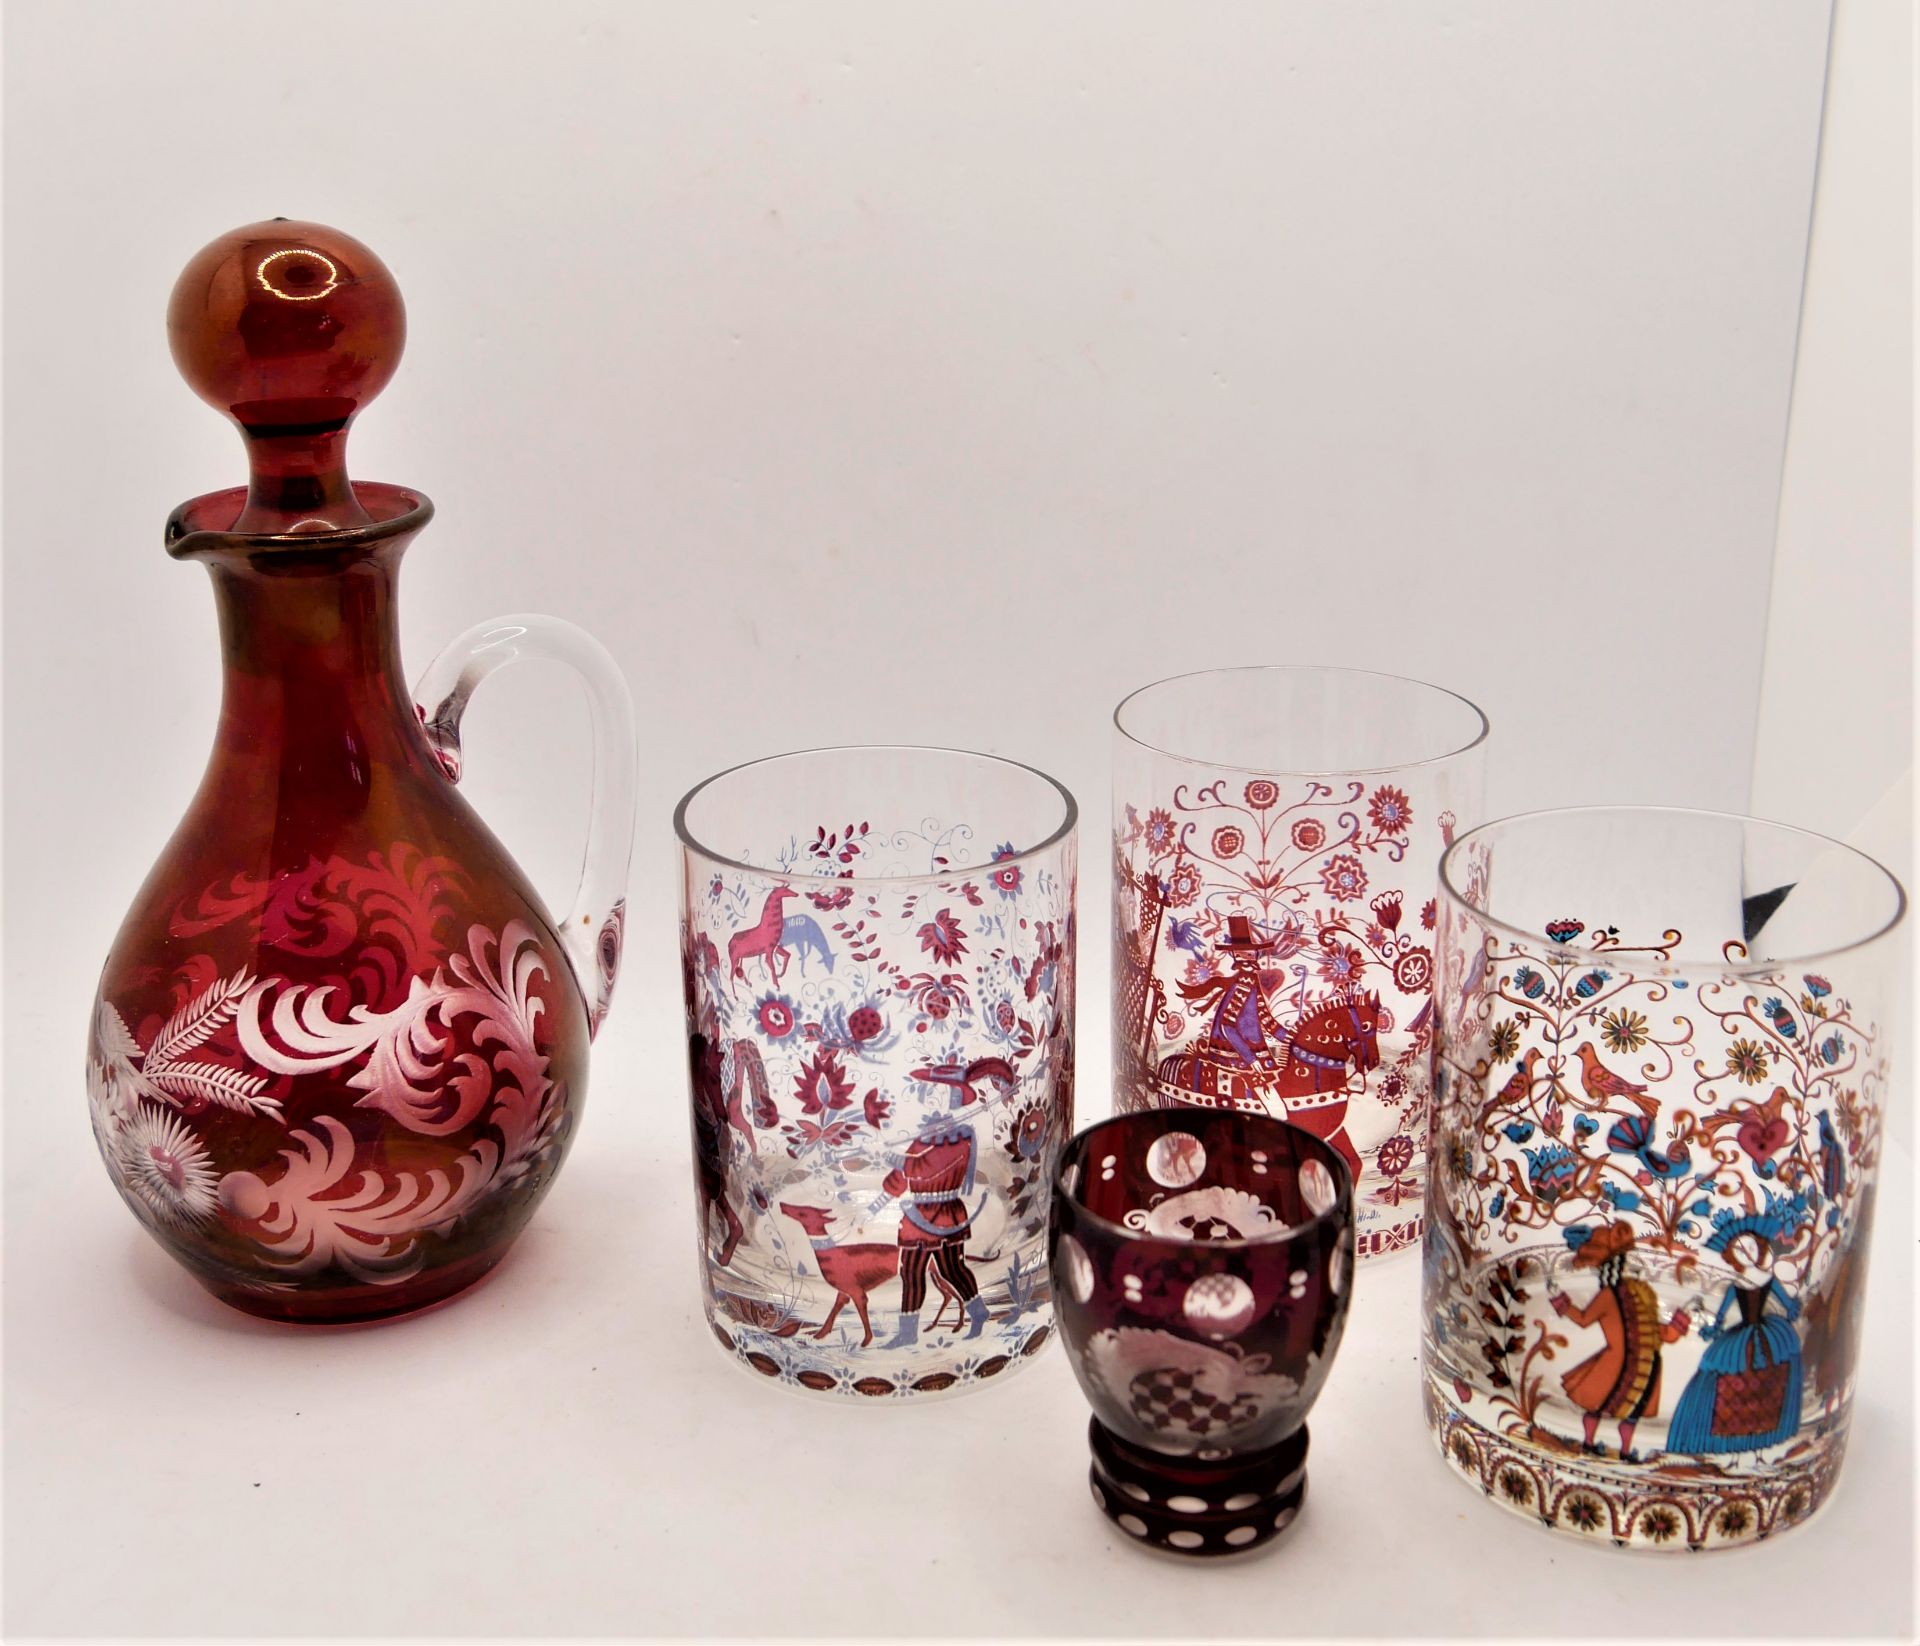 Kleines Lot Gläser, farbig bemalt, dabei 3 Wassergläser, sowie 1 Karaffe und 1 Schnapsglas rot